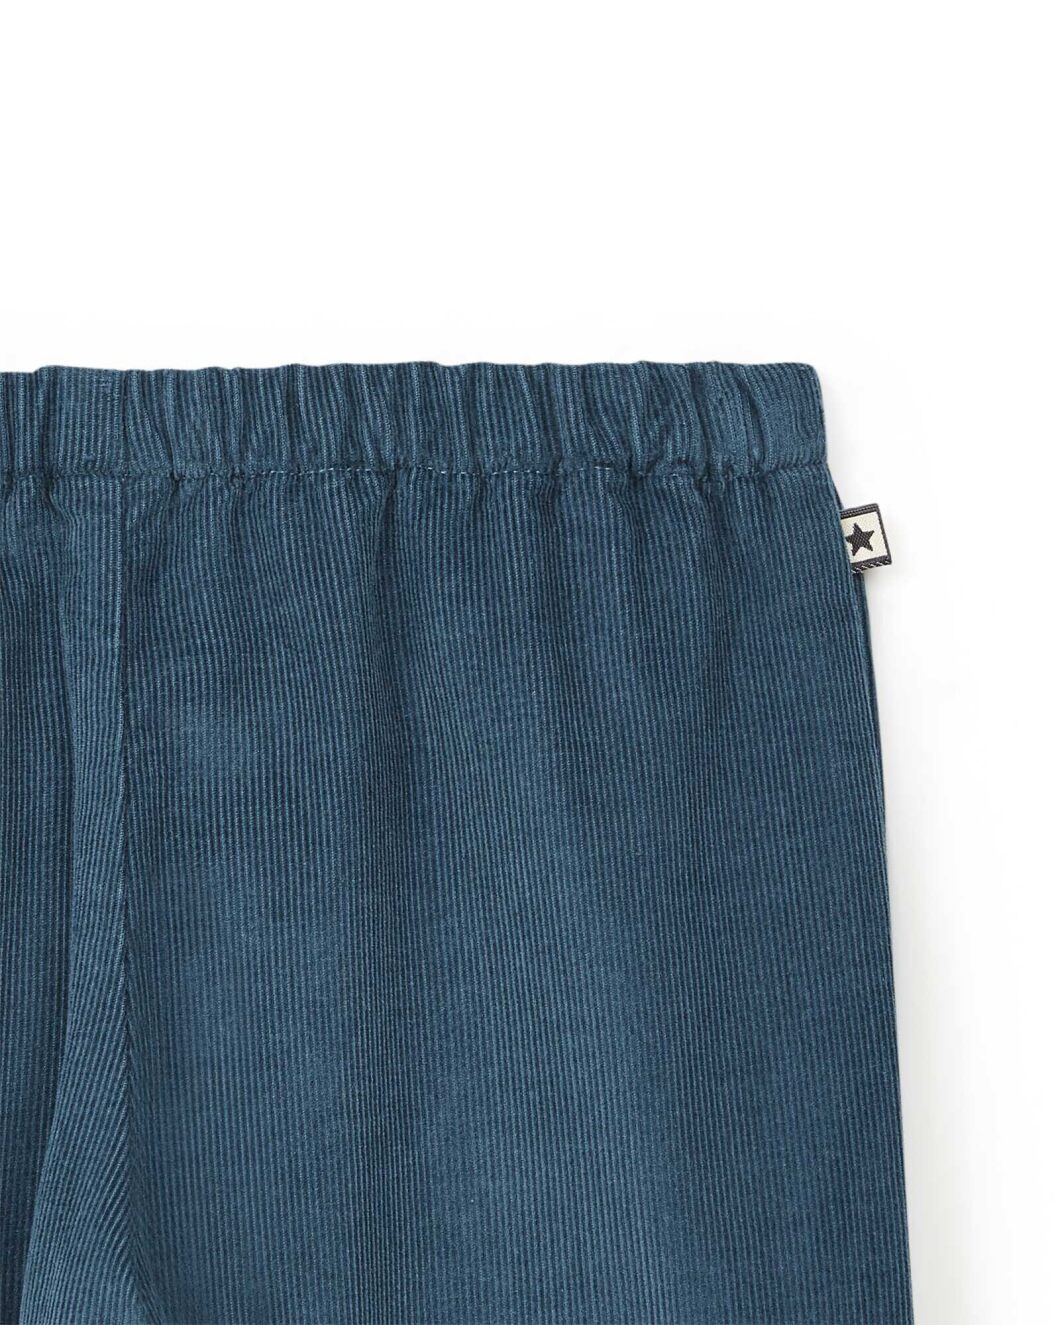 Blue Corduroy Pants - Bonton